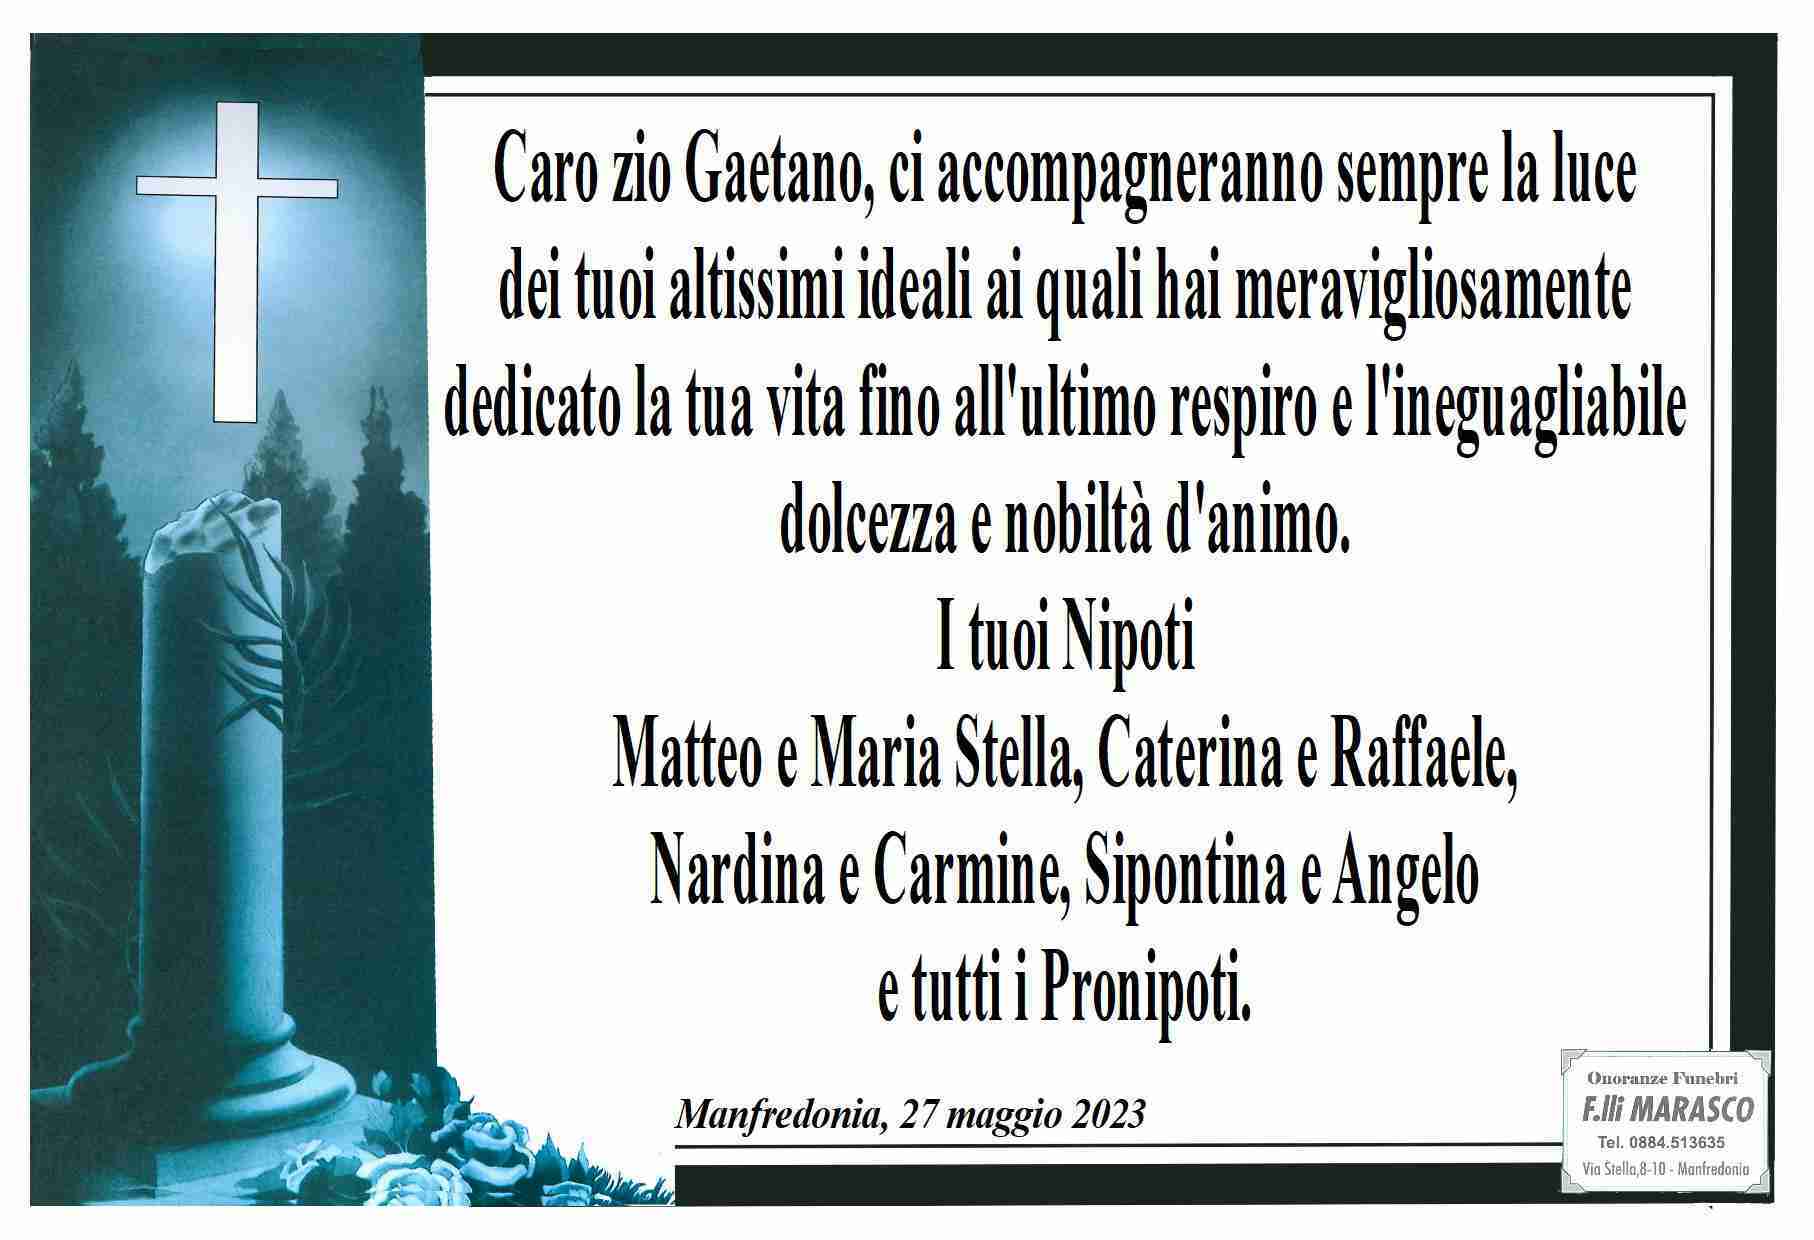 Gaetano Castriotta